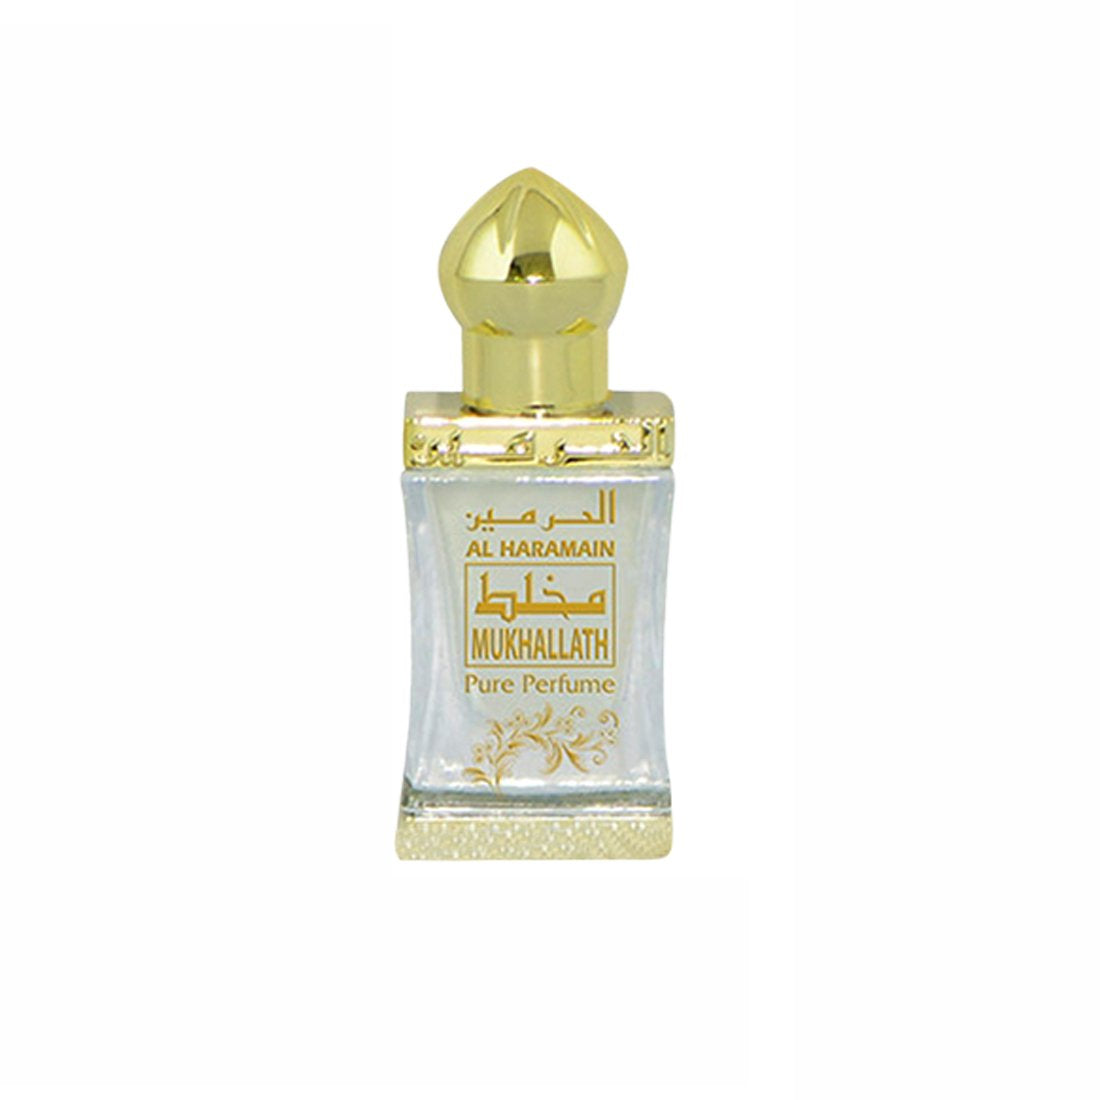 Al Haramain Mukhallath Fragrance Pure Original Perfume Oil Attar - 12 ml